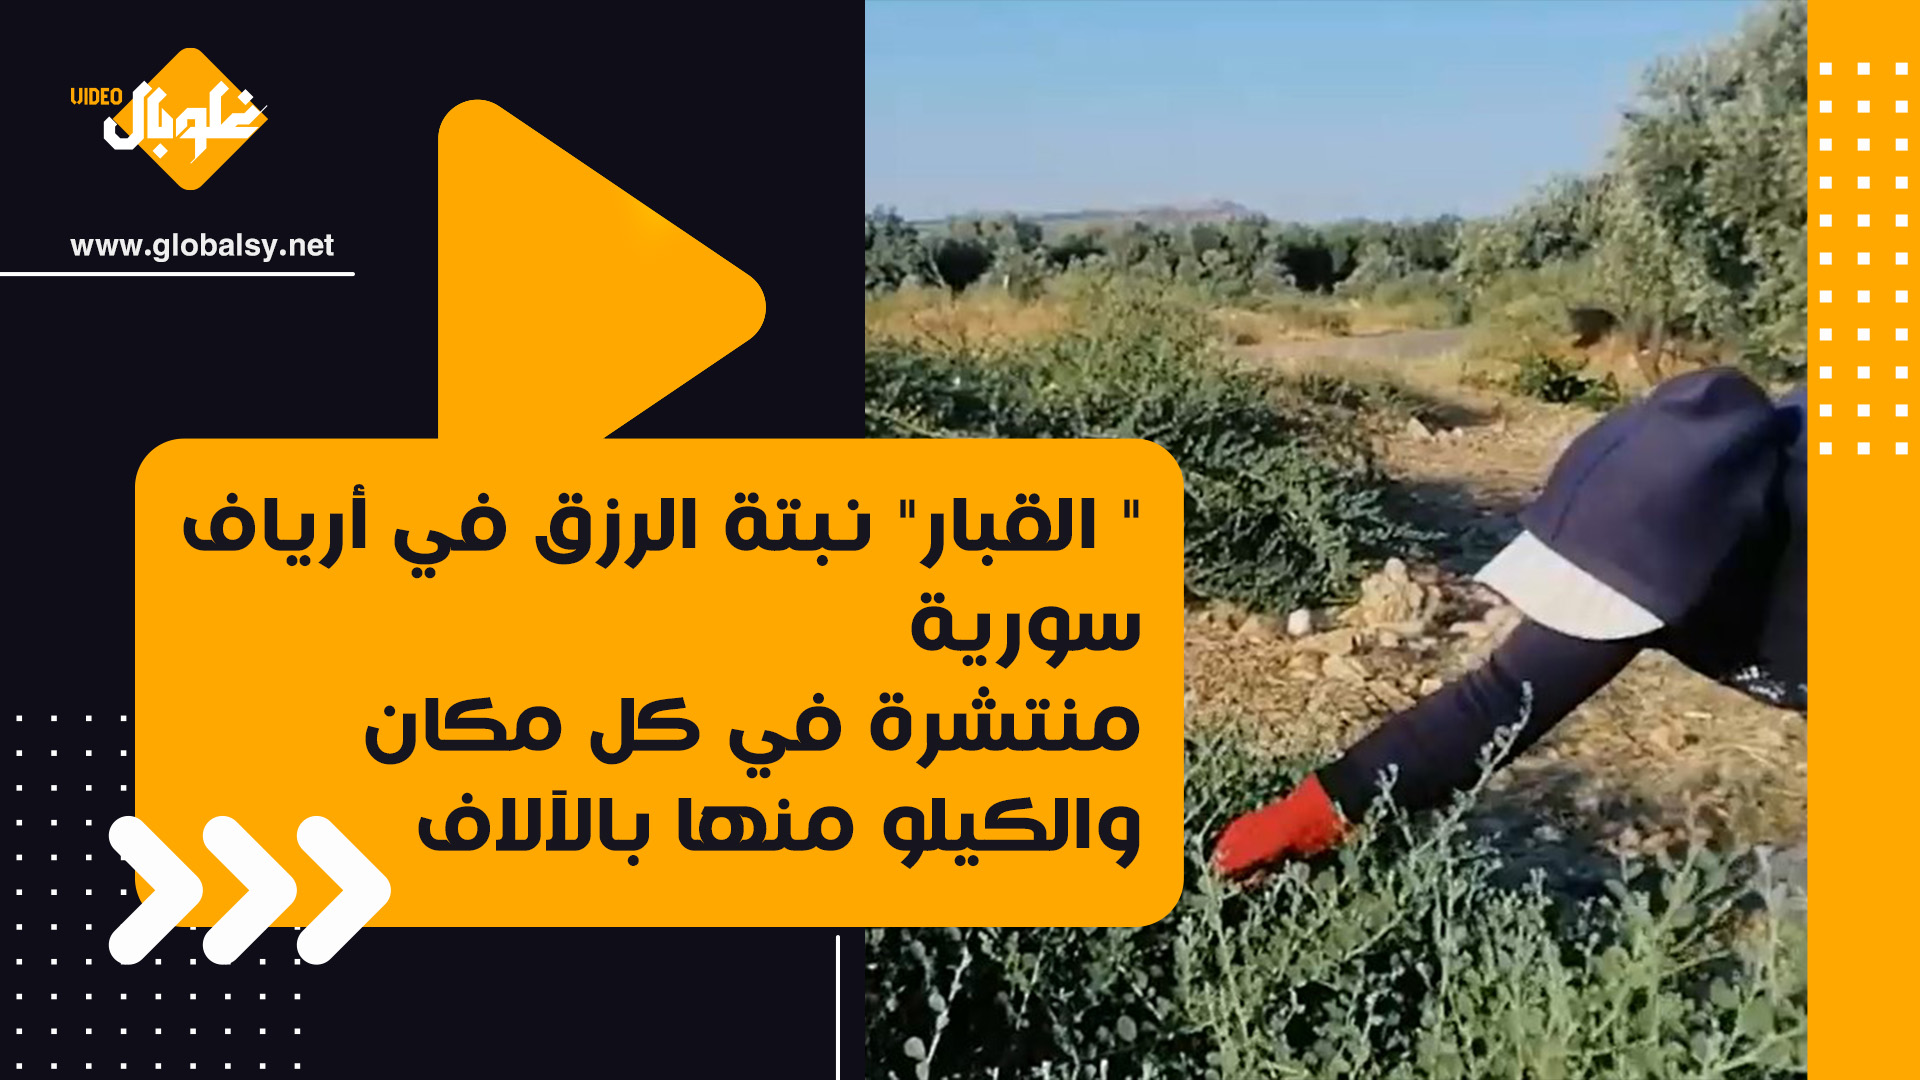 ” القبار” نبتة الرزق في أرياف سورية… منتشرة في كل مكان والكيلو منها بالآلاف